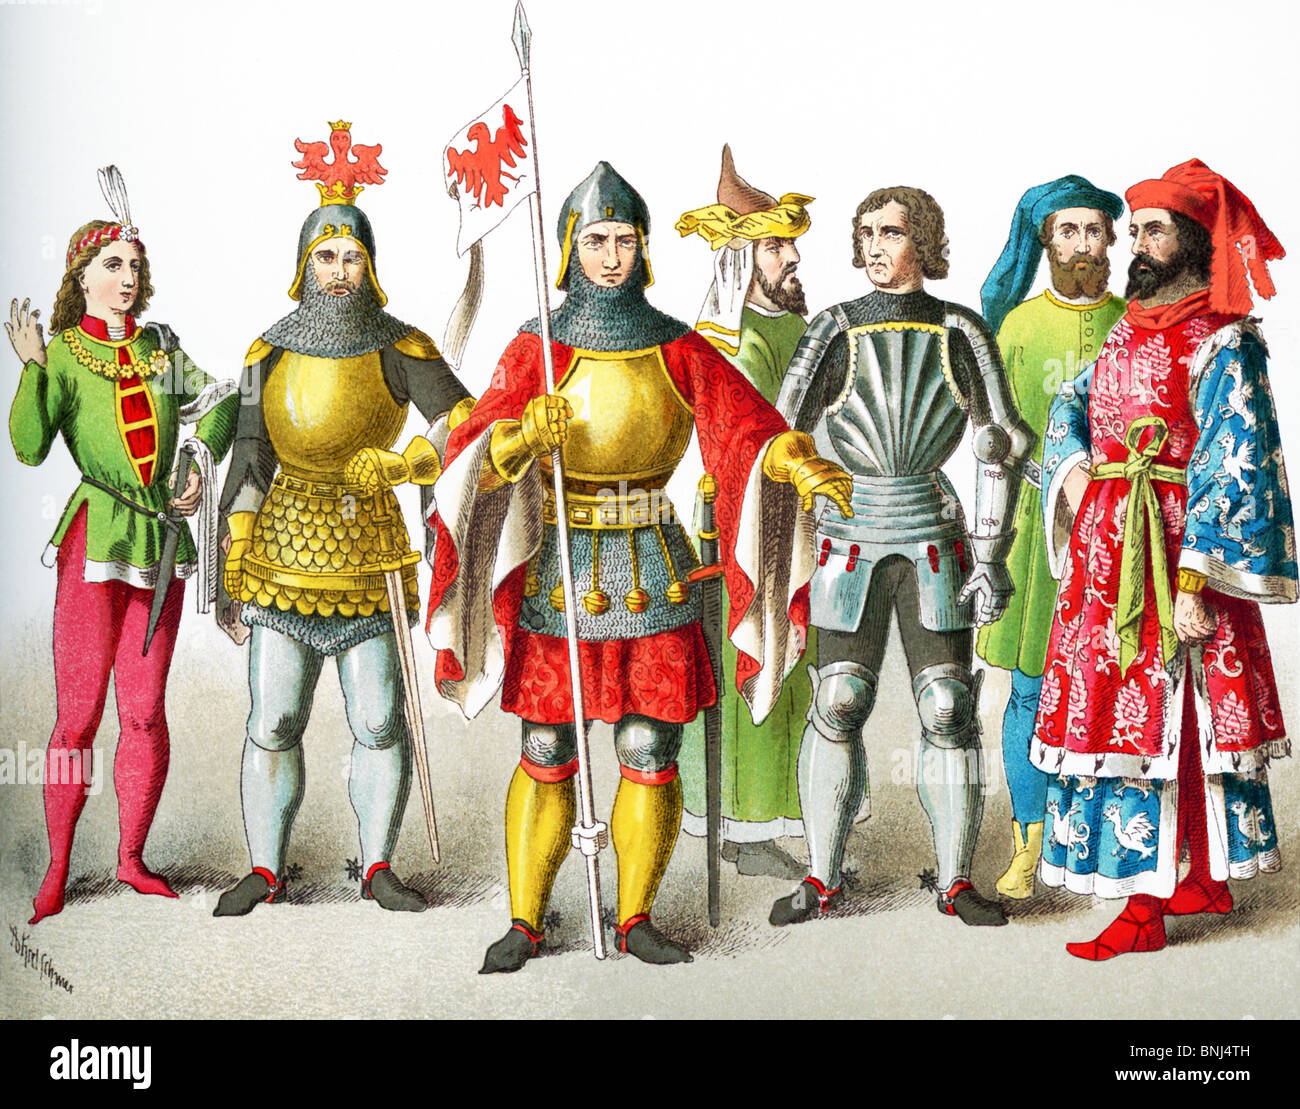 Les chiffres représentent des Allemands de l'an 1400-1450. Ils sont : noble, deux chevaliers, noble, chevalier, seigneur de deux. Banque D'Images